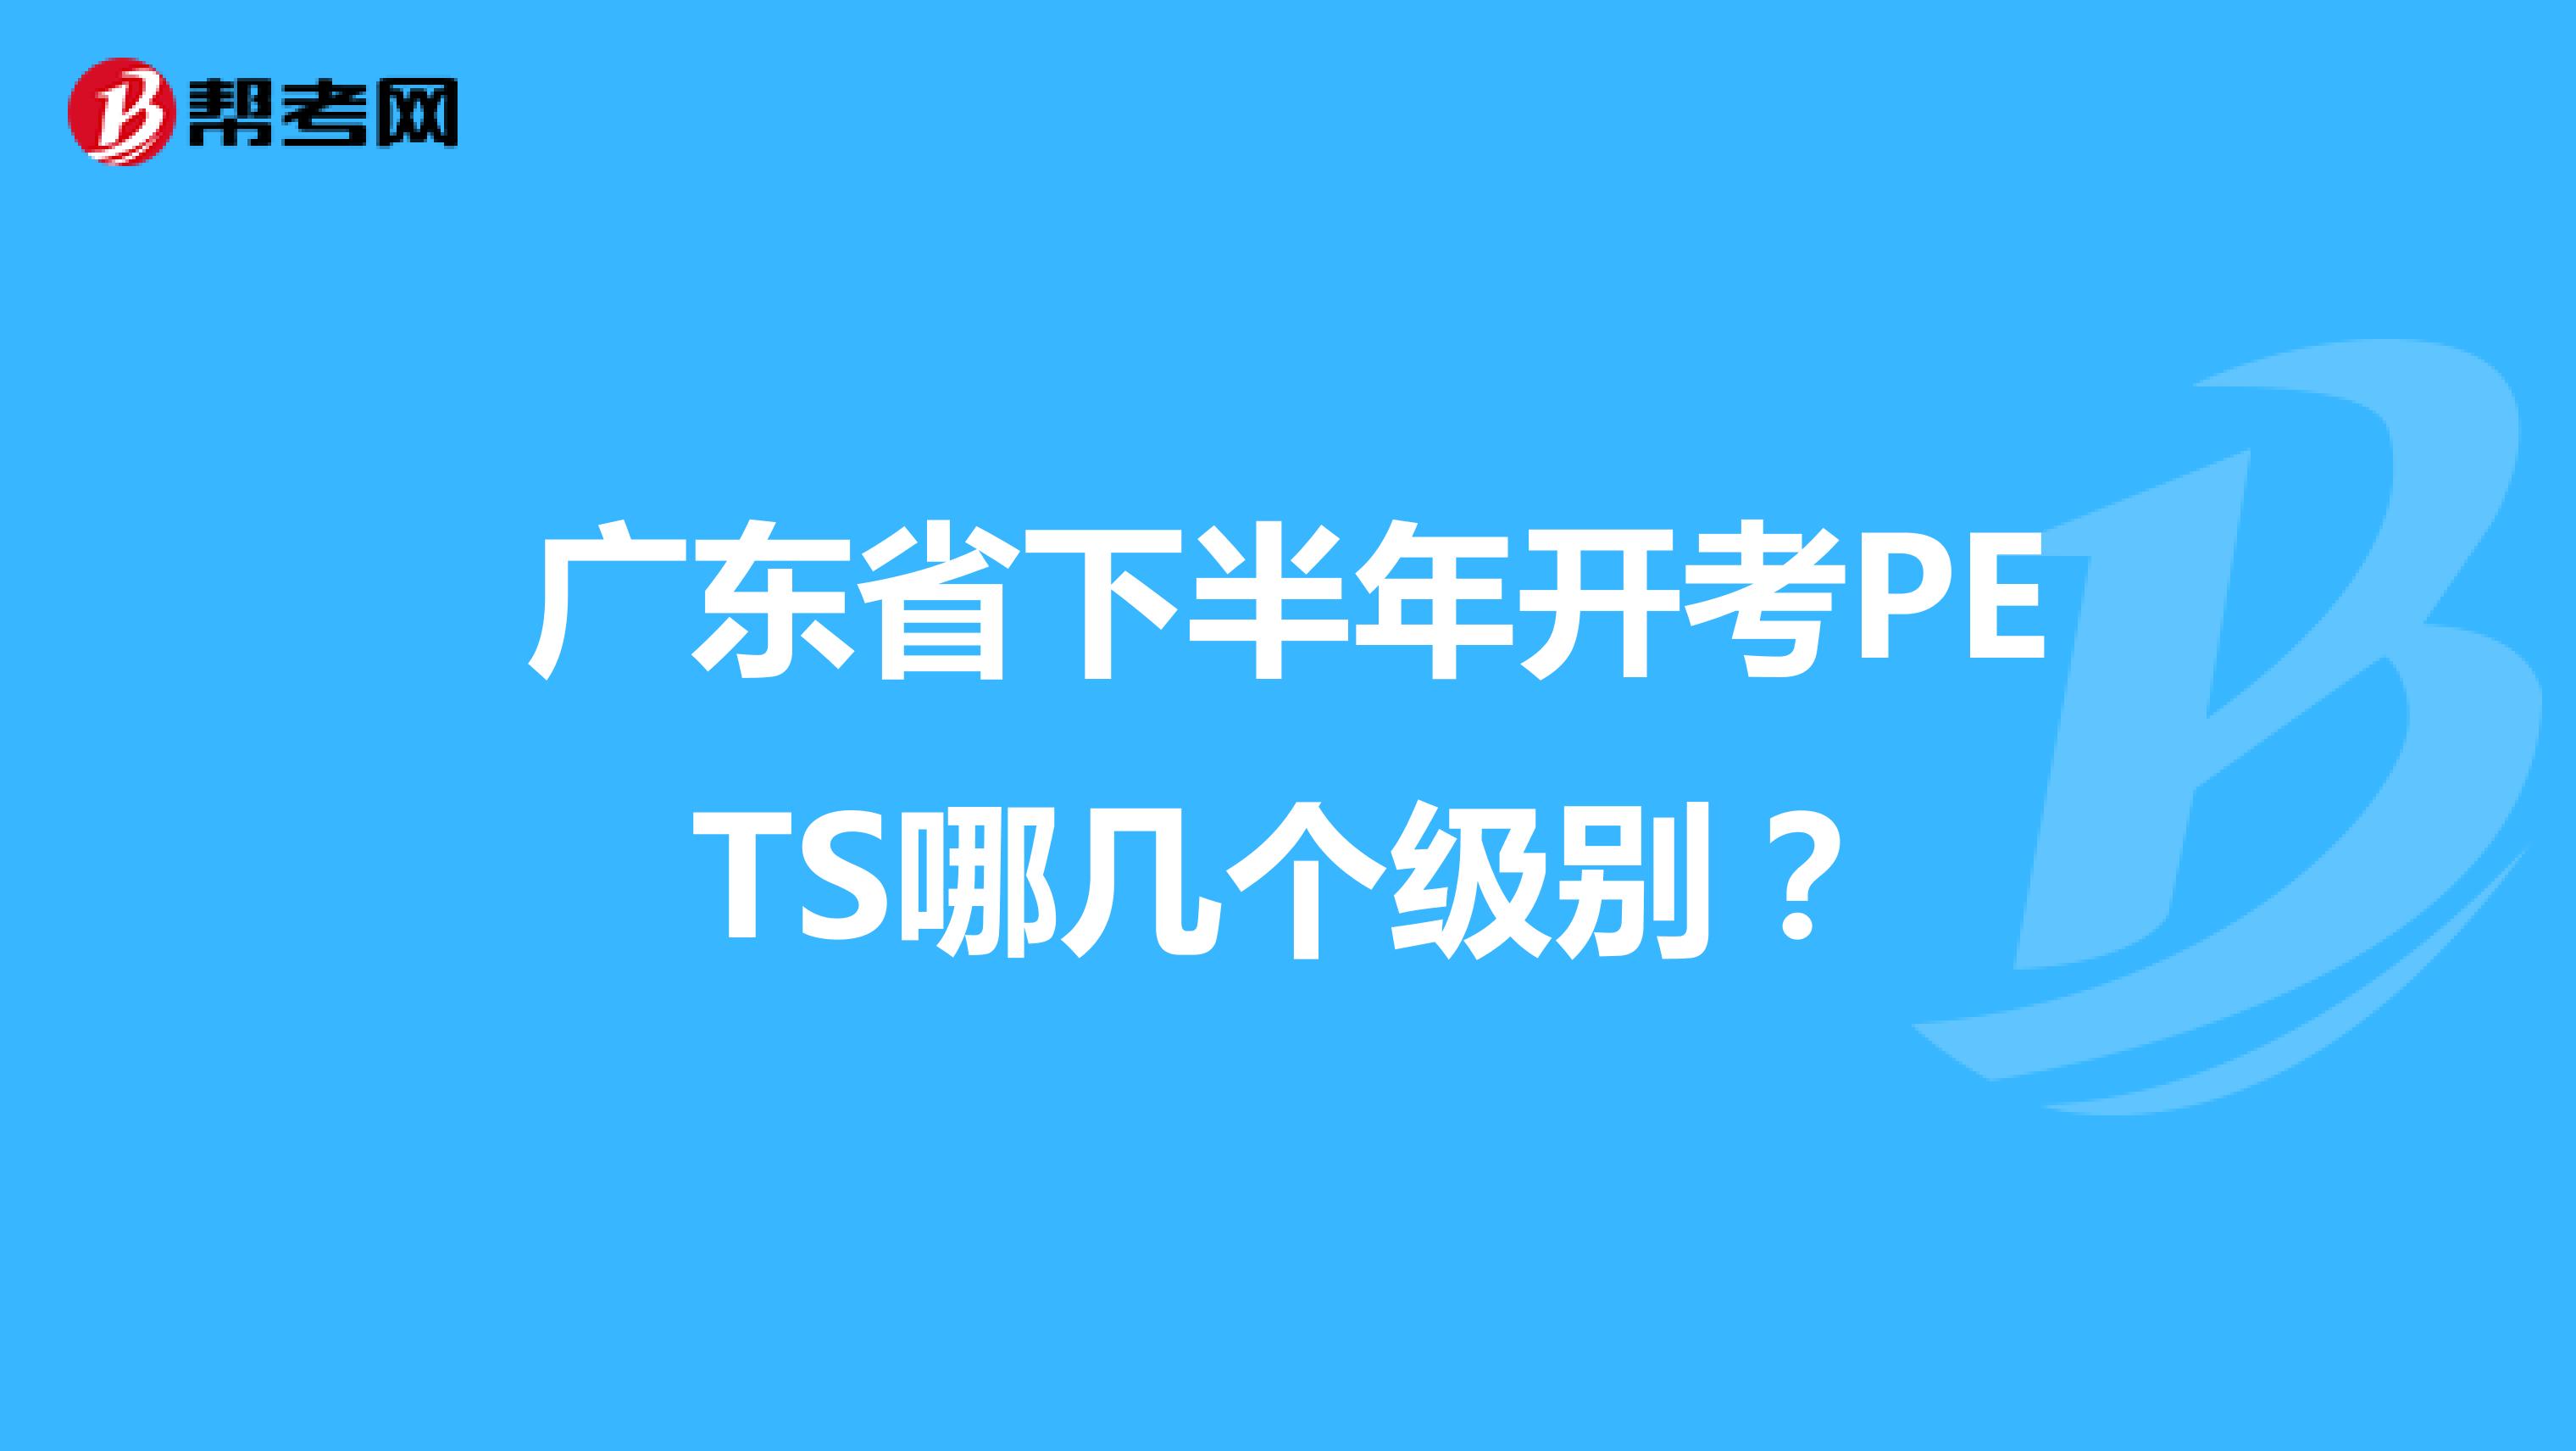 广东省下半年开考PETS哪几个级别？